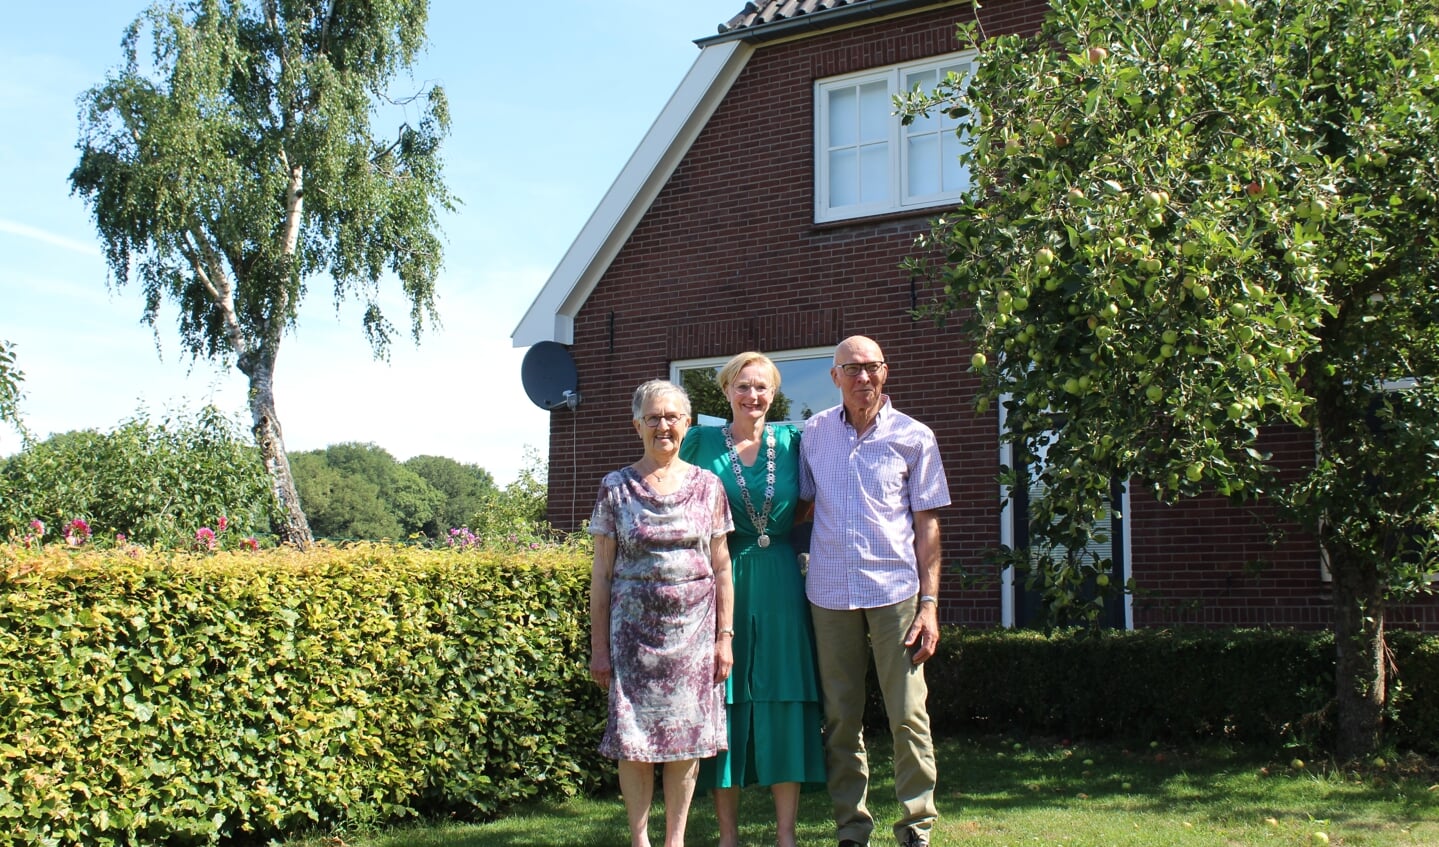 Dirk en Truus Nusselder met burgemeester Besselink die vanwege hun 60-jarig huwelijk een bezoek bracht aan het echtpaar. Foto: Marian Nusselder